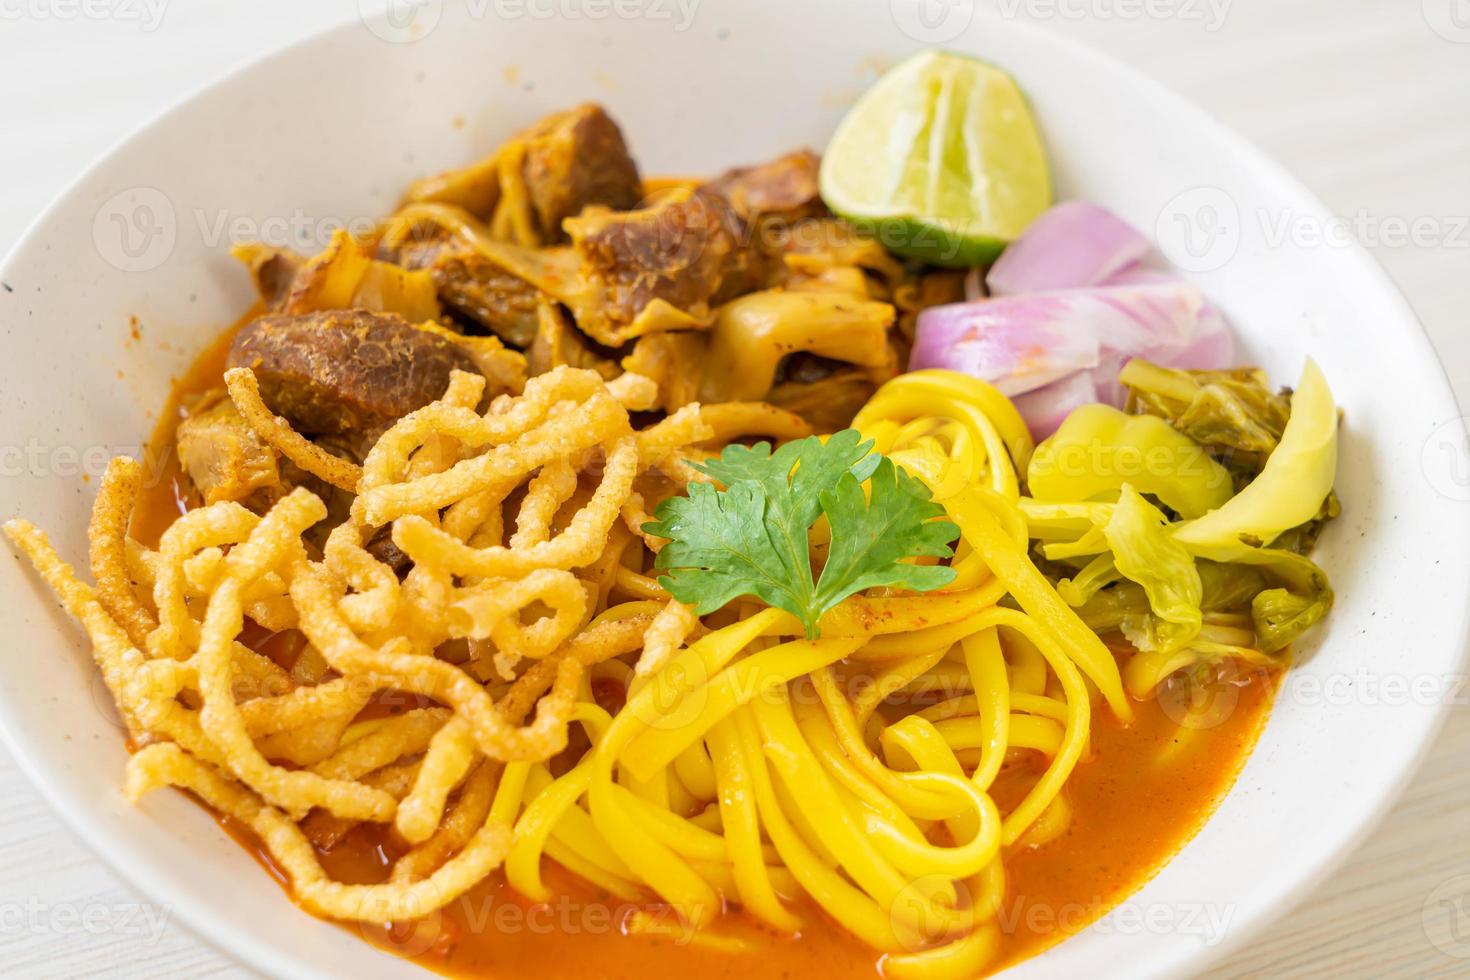 norra thailändska nudel curry soppa med bräserat fläsk foto